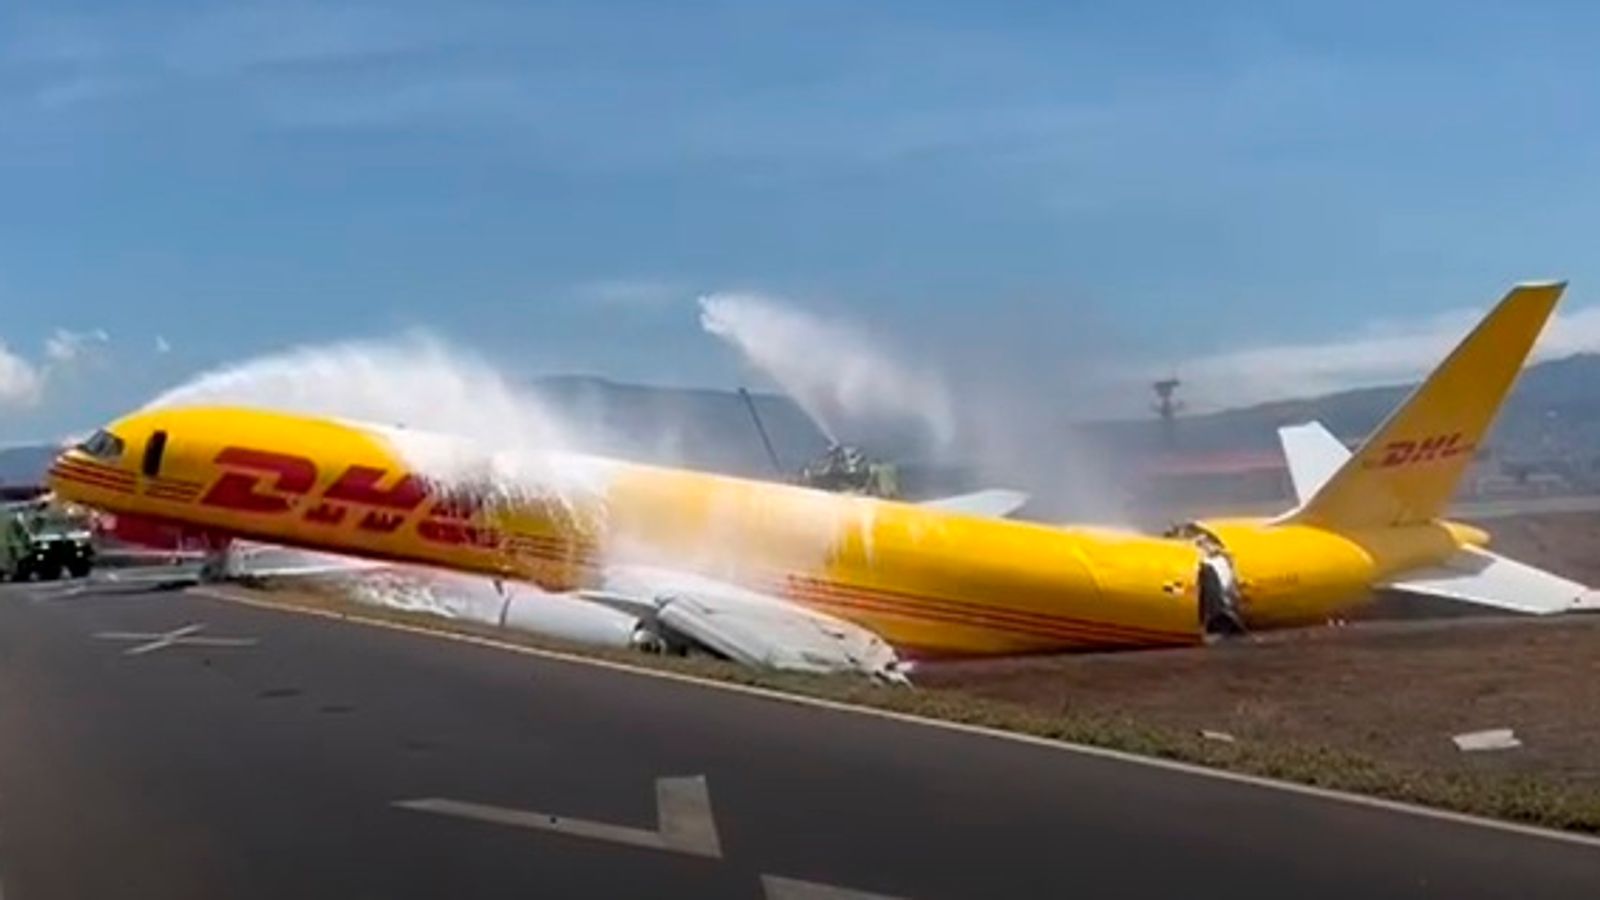 Avión de carga de DHL se parte en dos tras derrapar en la pista durante un aterrizaje de emergencia |  Noticias del mundo